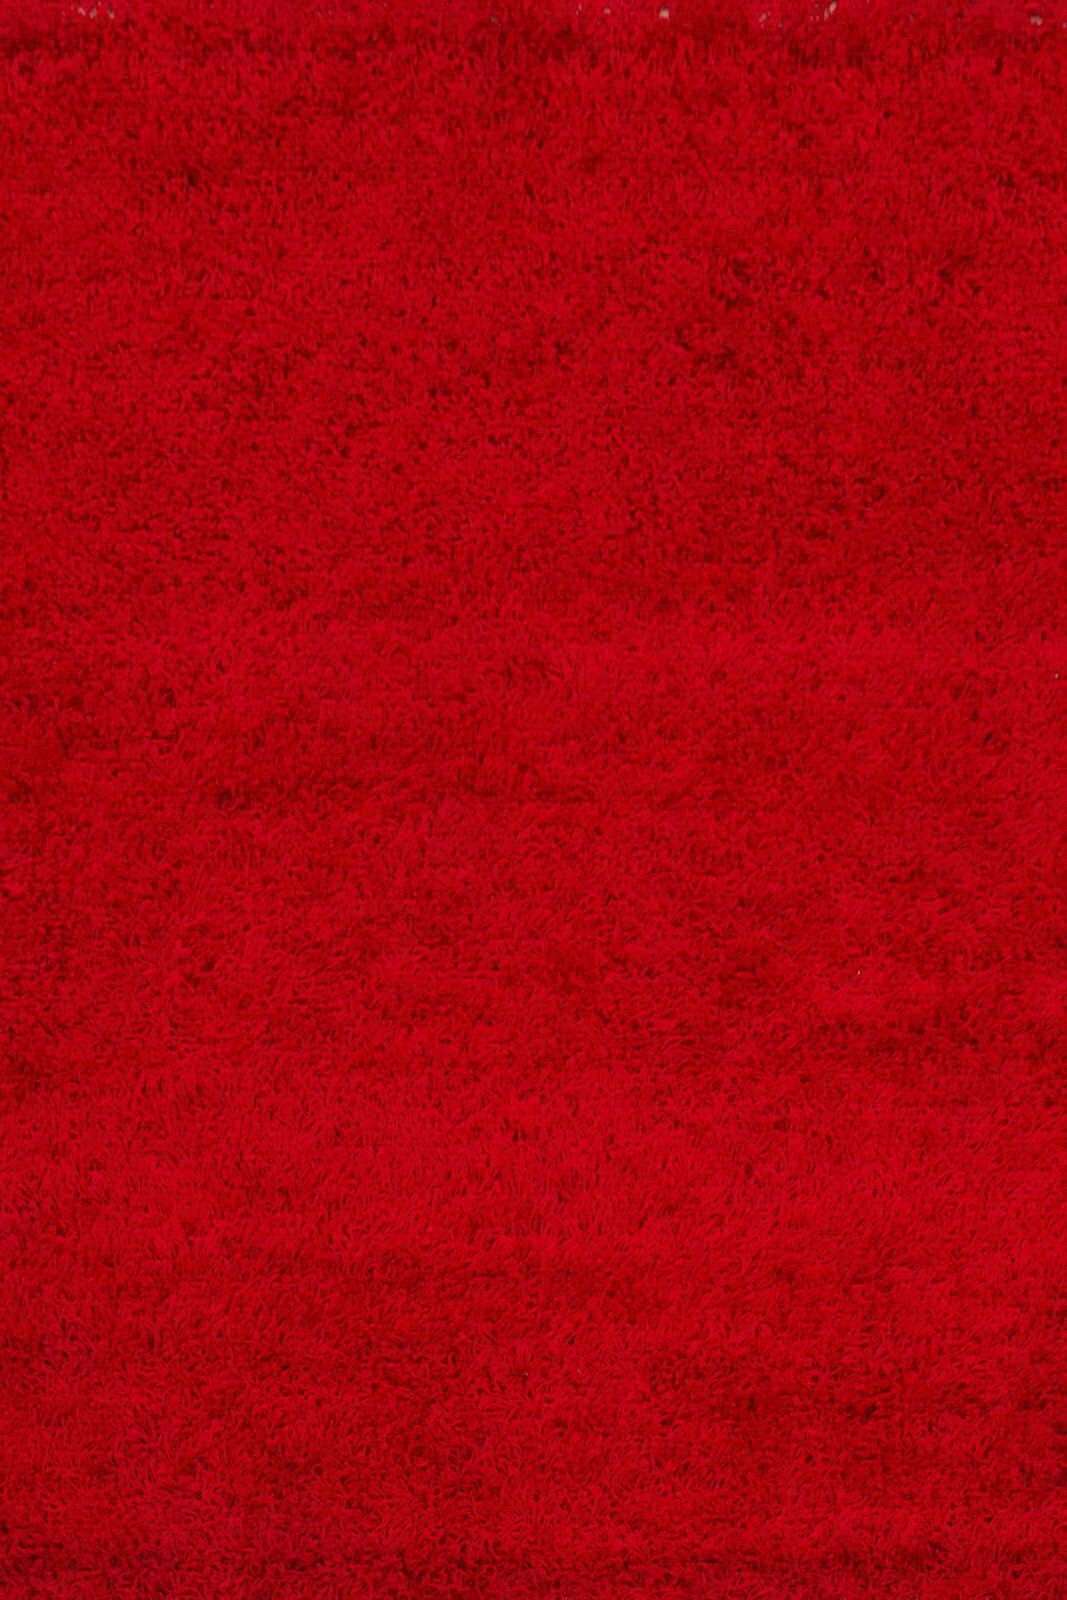 COVOARE - COVOR RELAX 160*230 150 RED, comenziperpetuum.ro